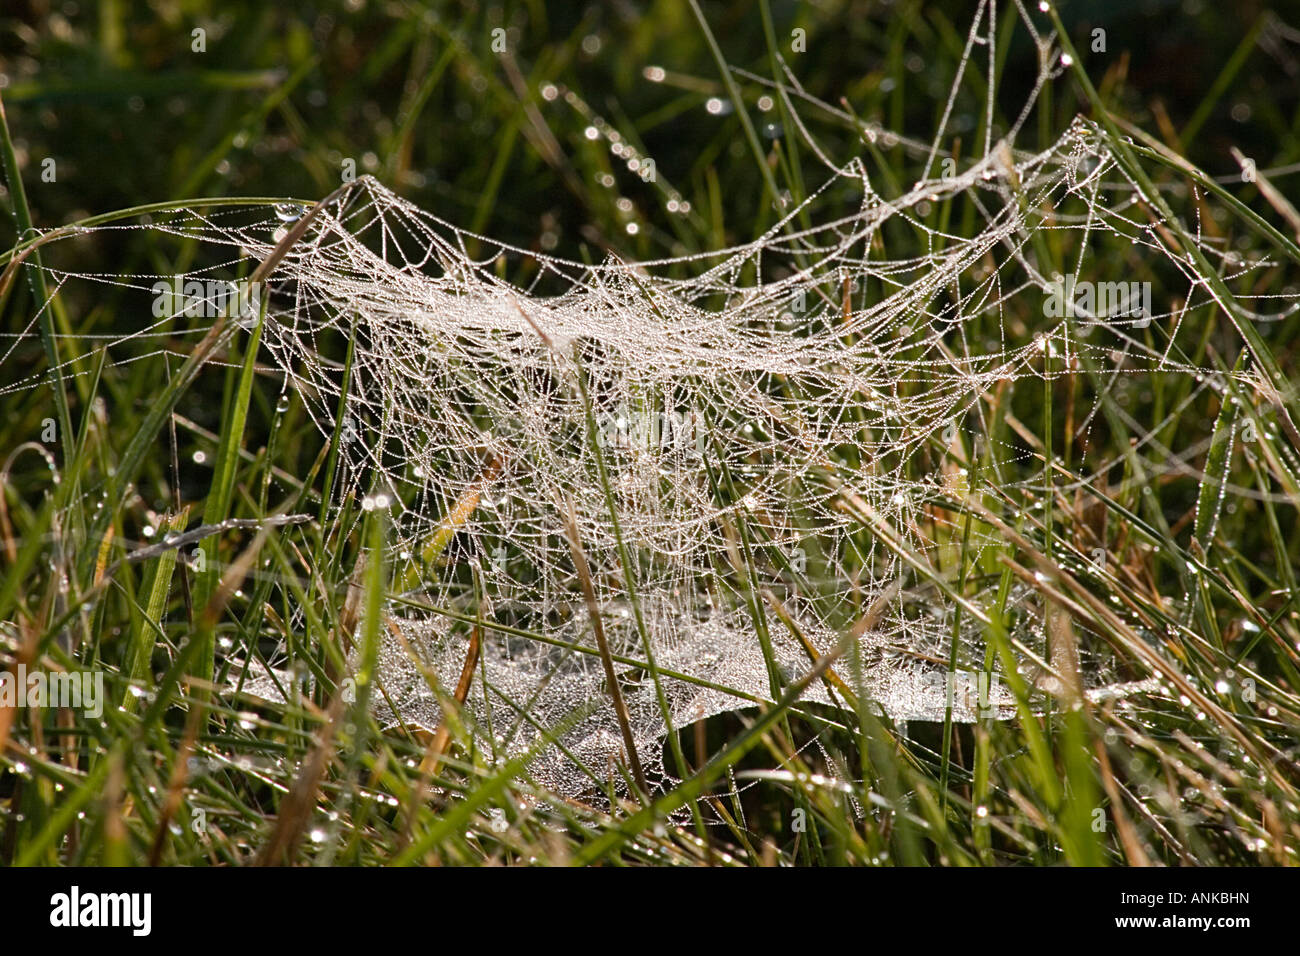 Tautropfen Hervorhebung Spinnen Stege in Rasen Stockfoto